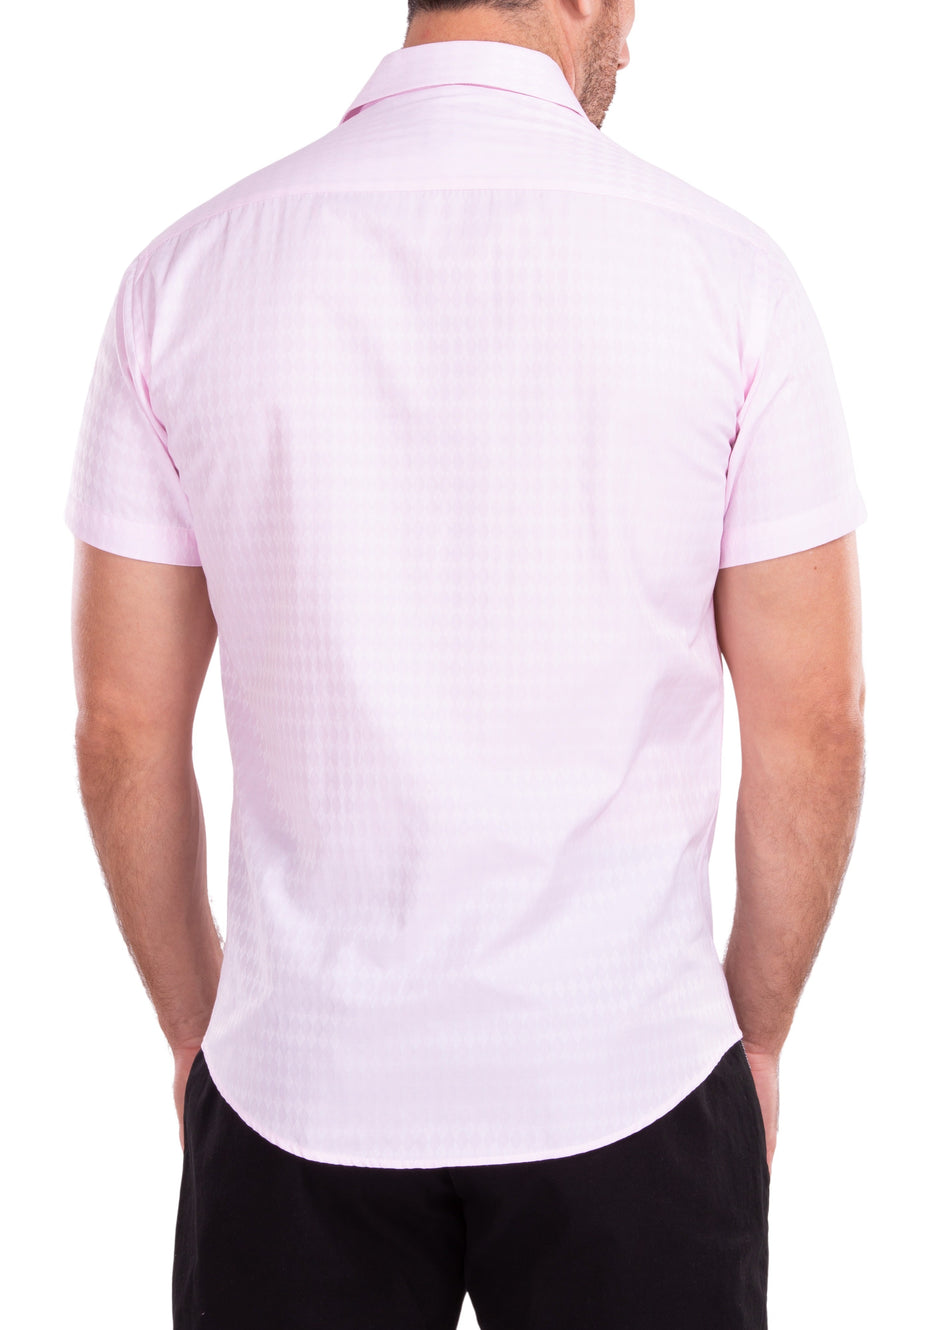 212112 - Pink Button Up Short Sleeve Dress Shirt